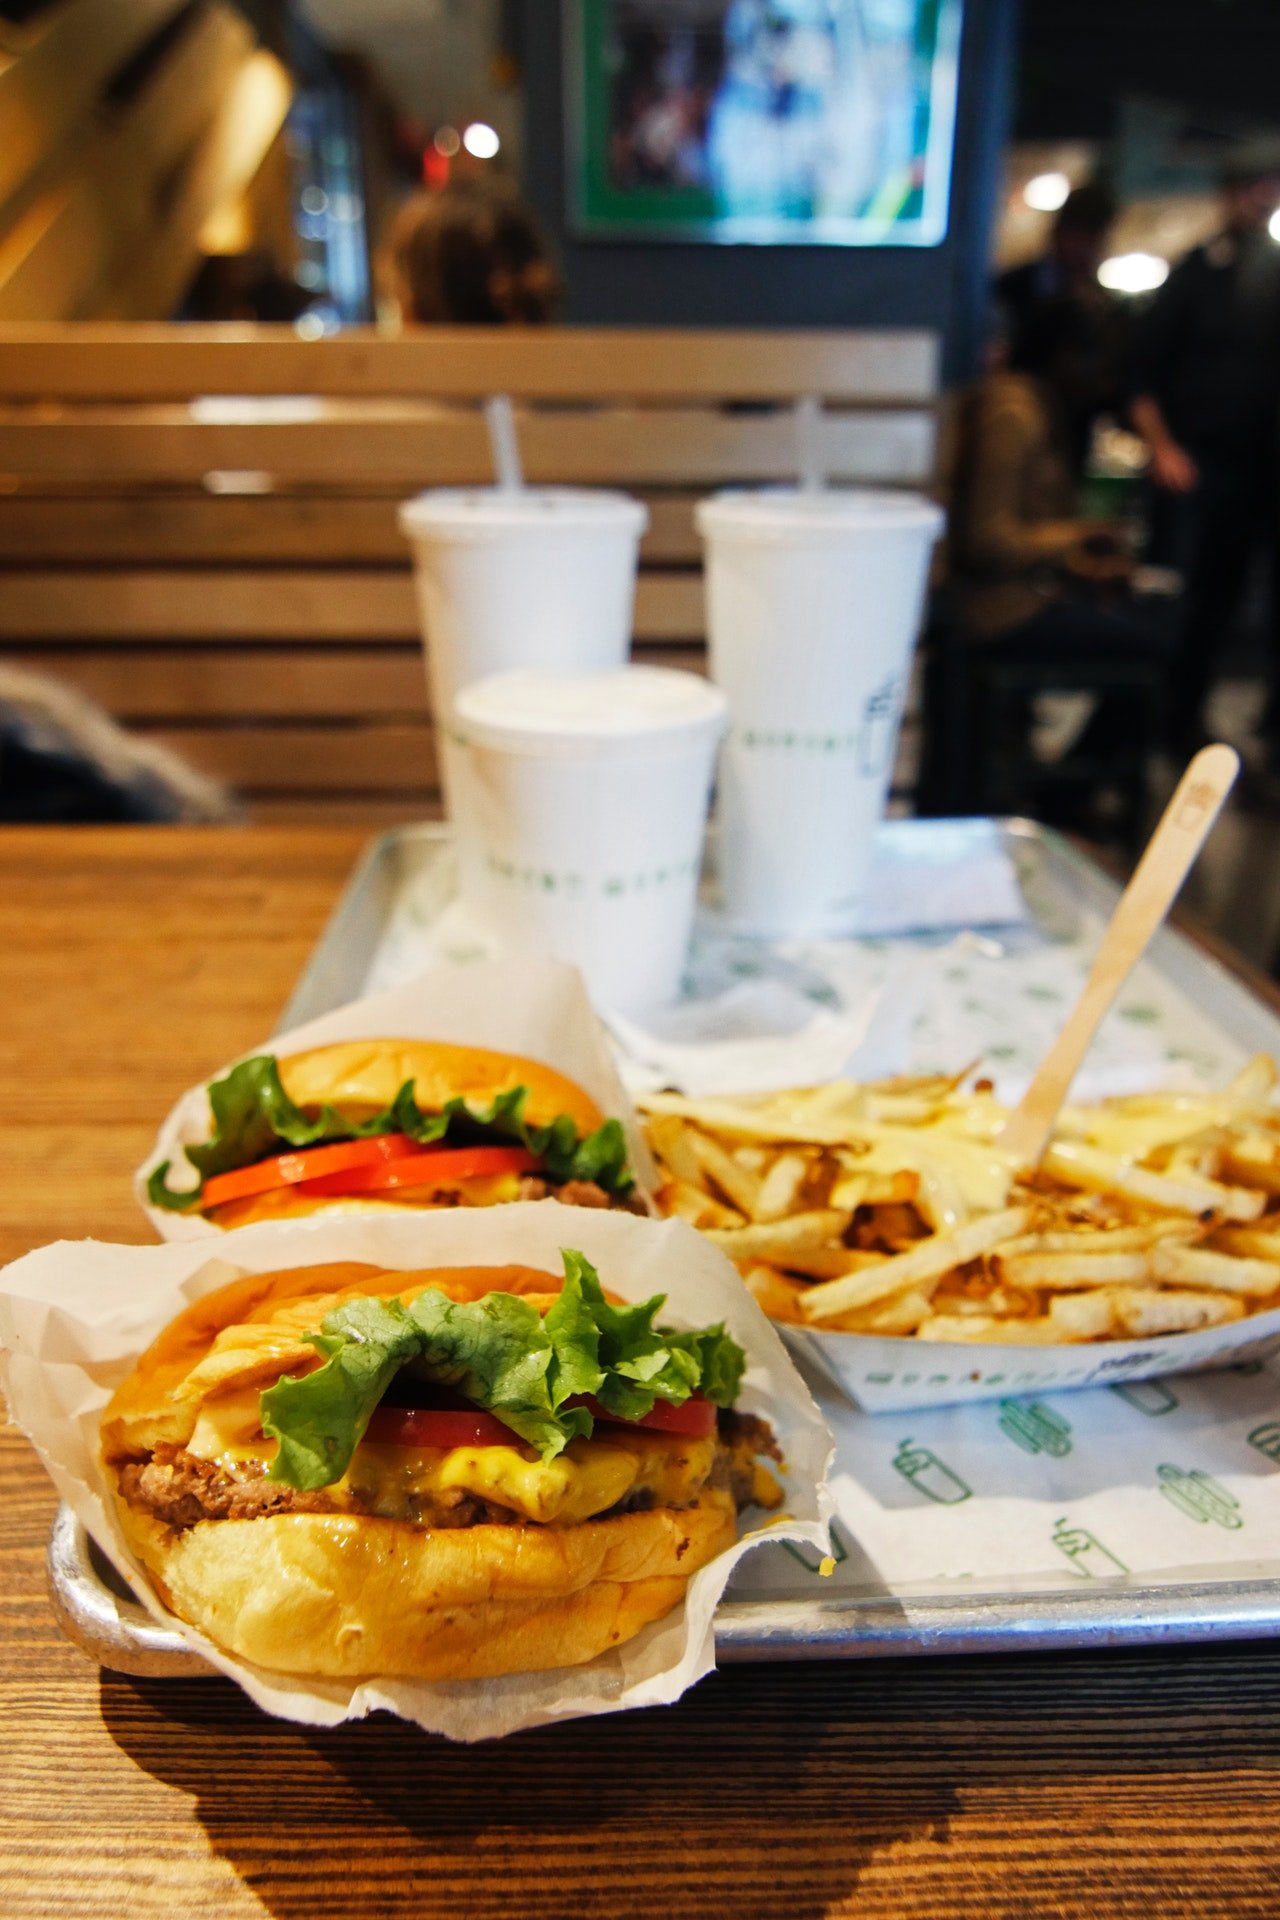 Sie beschlossen, gemeinsam Burger zu essen. | Quelle: Pexels